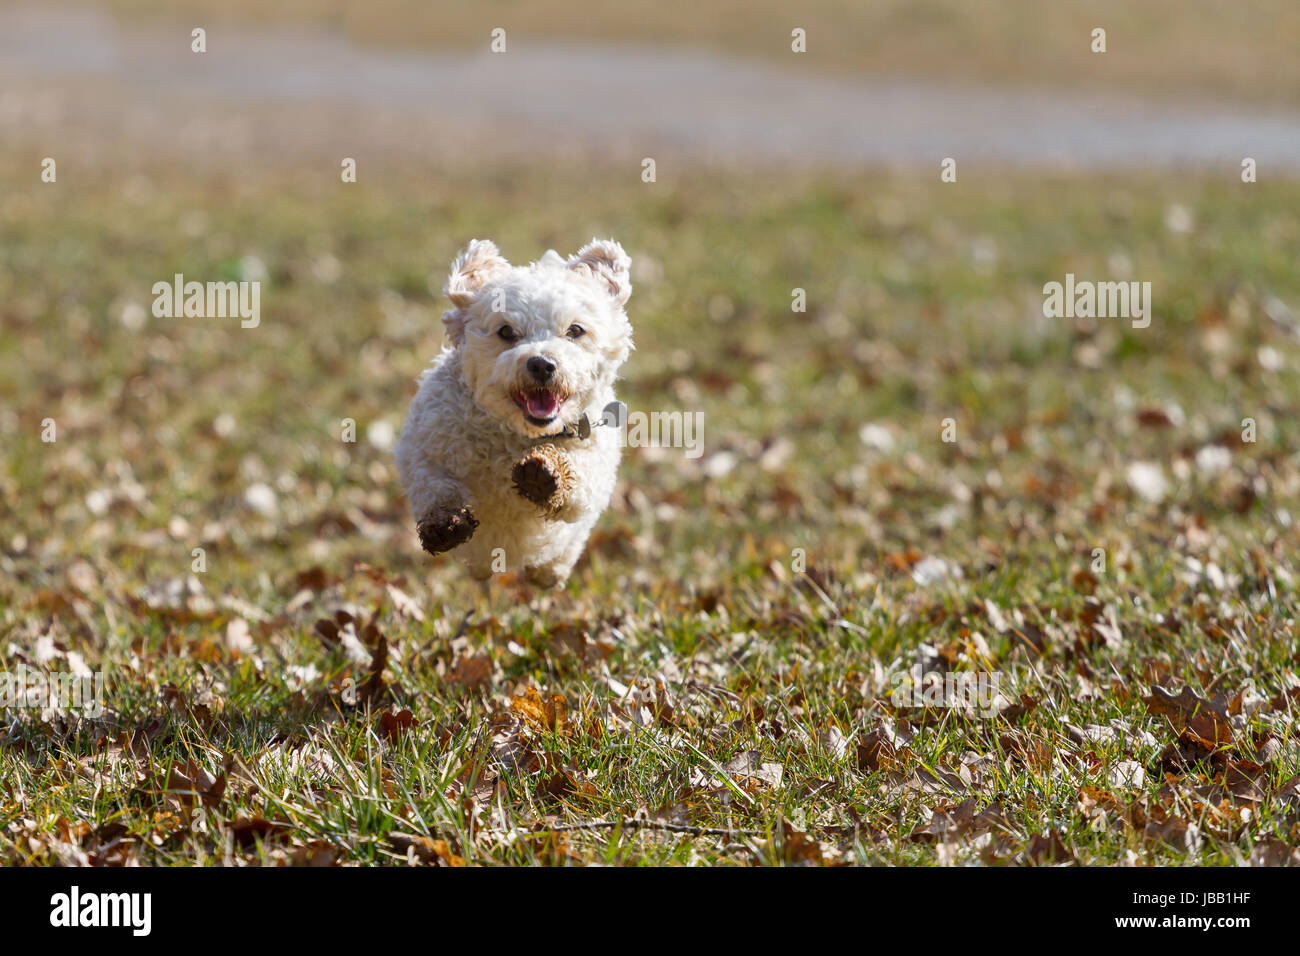 Ein Kleiner weißer Mischlingshund fliegt über eine Wiese, der Hund rennt direkt auf den Fotografen zu. Stock Photo